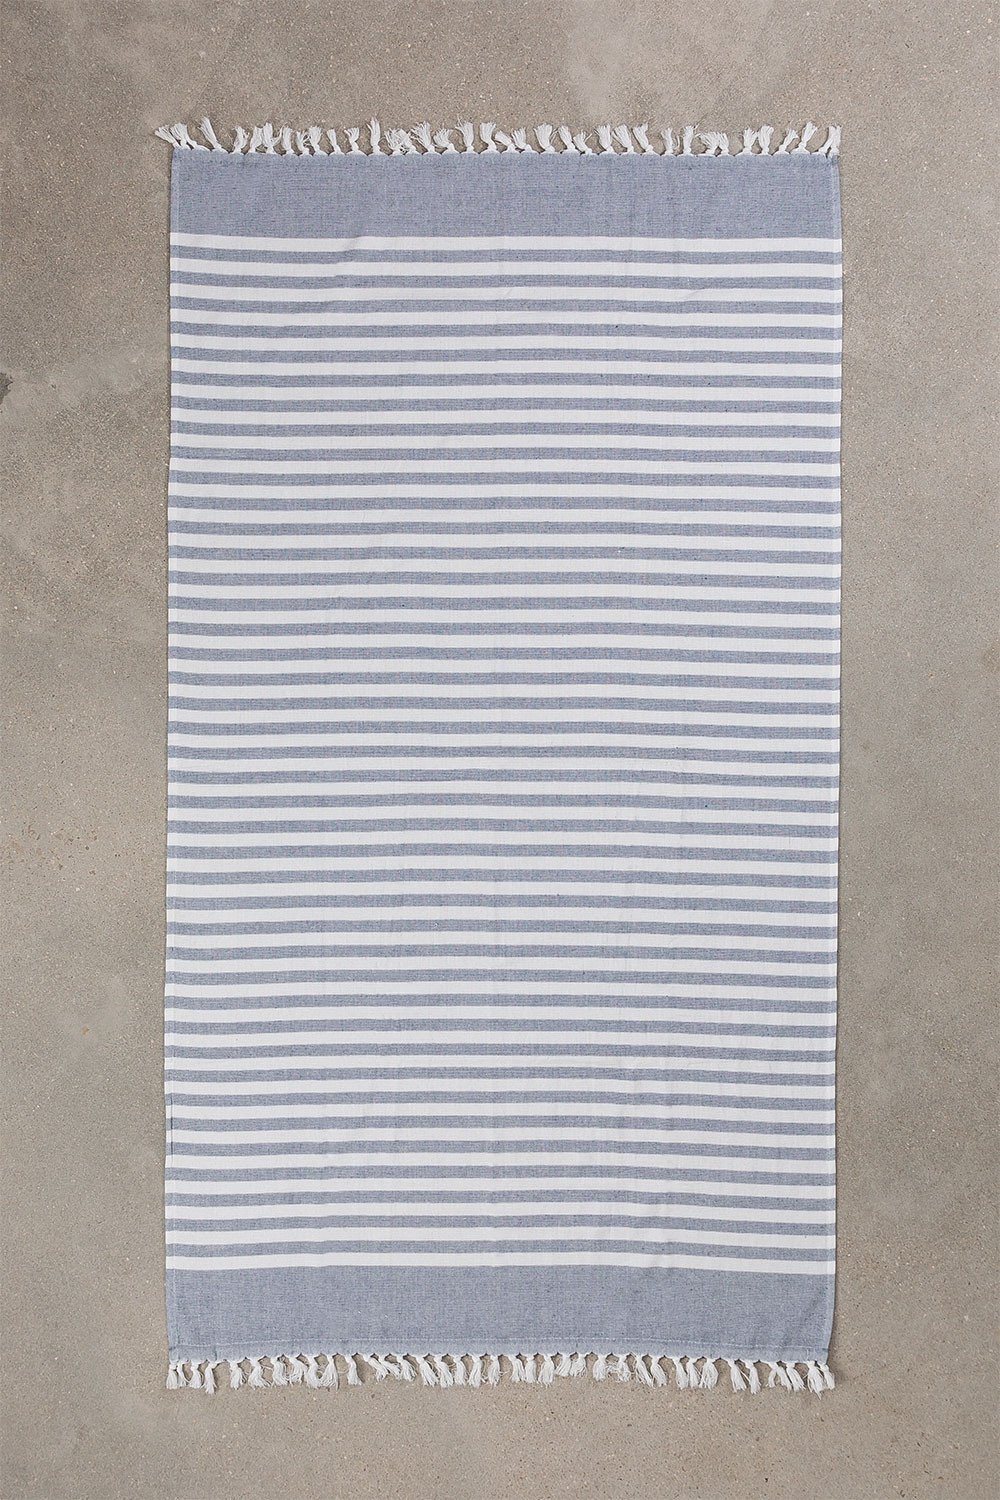 Katoenen handdoek Reinn, galerij beeld 1